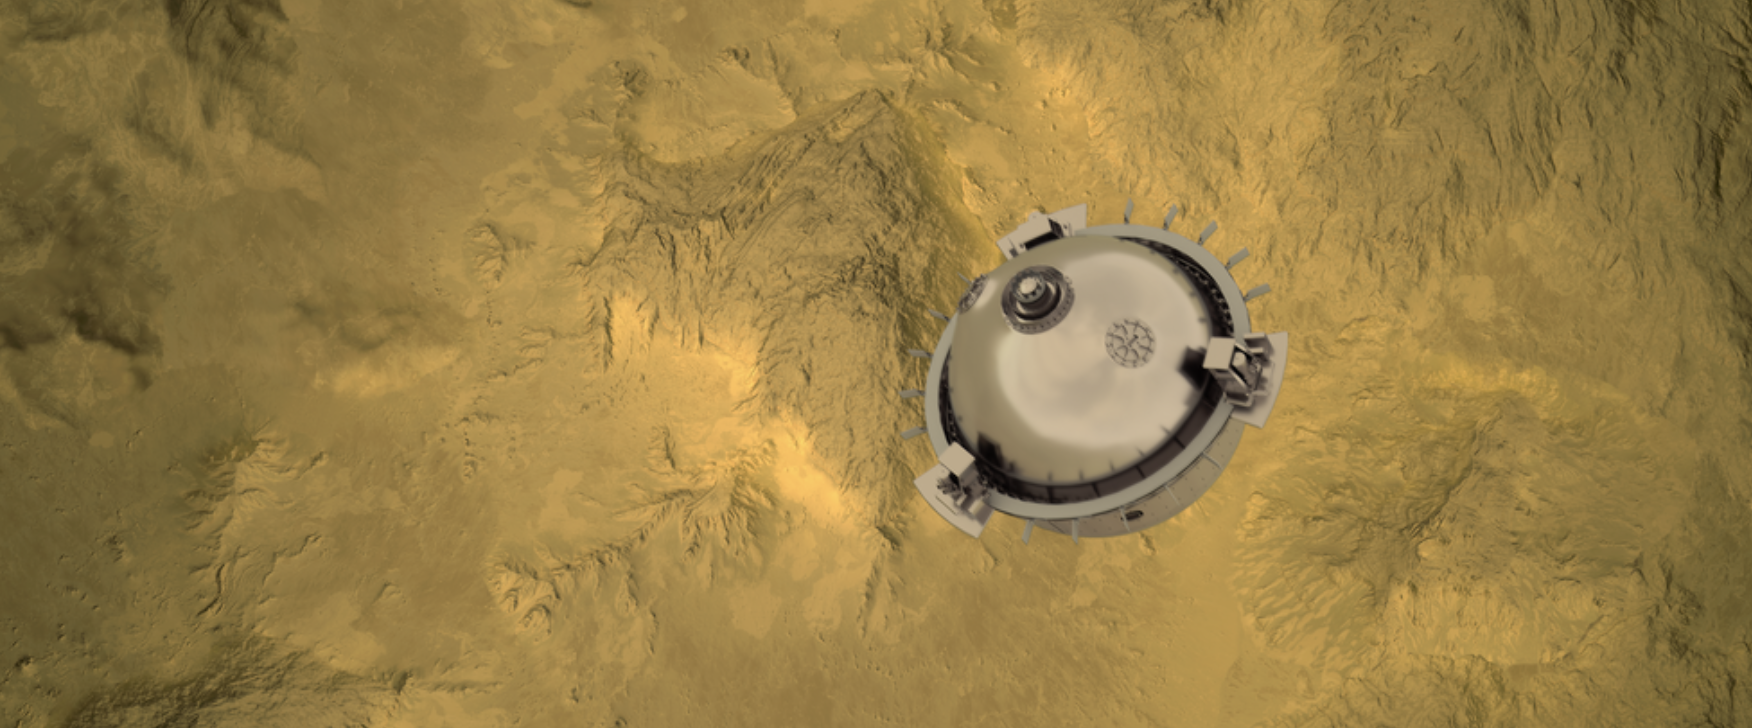 “达芬奇+”将发射直径1米的探测器，在金星表面的高温高压下探索大气层。在最后的自由落体下降过程中（如图所示），探测器将捕捉金星图像和化学测量数据。